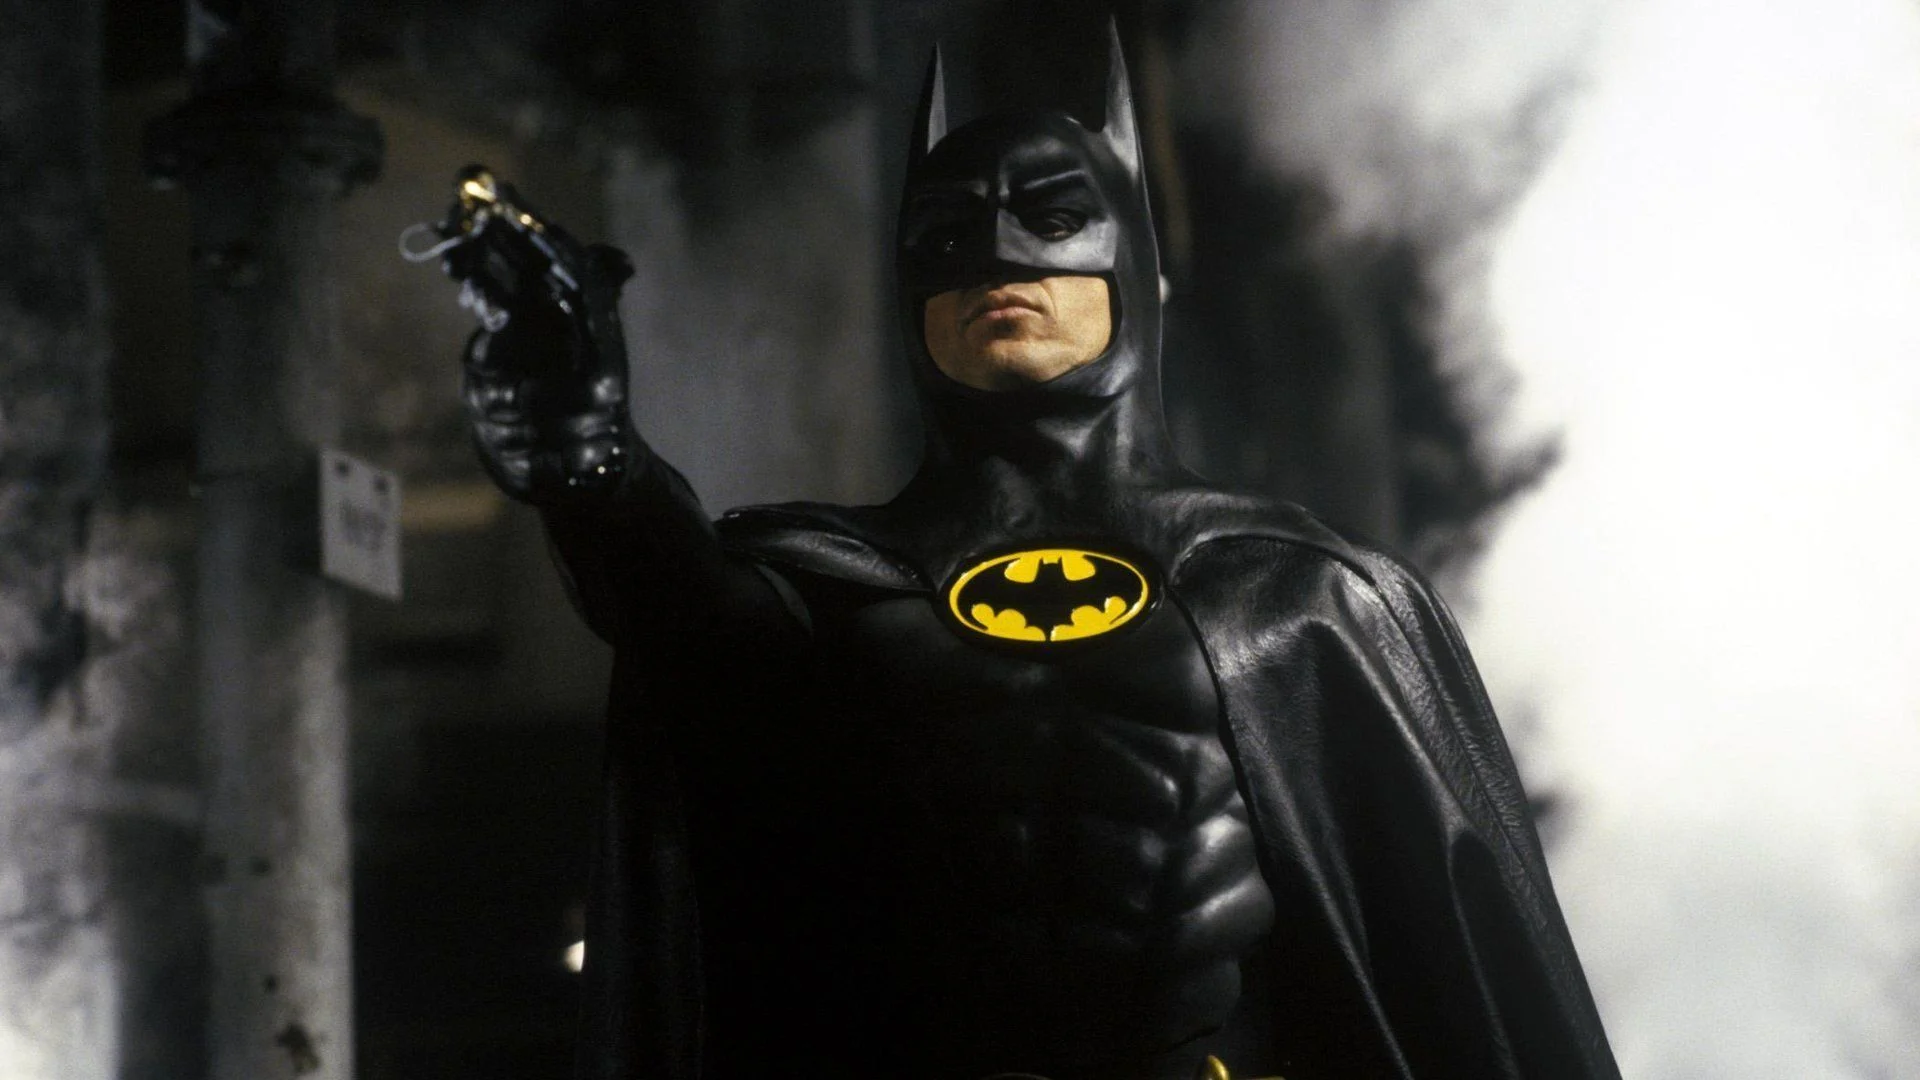 Michael Keaton - komik, który został Batmanem. Bogata kariera, różnorodne role i powrót na szczyt